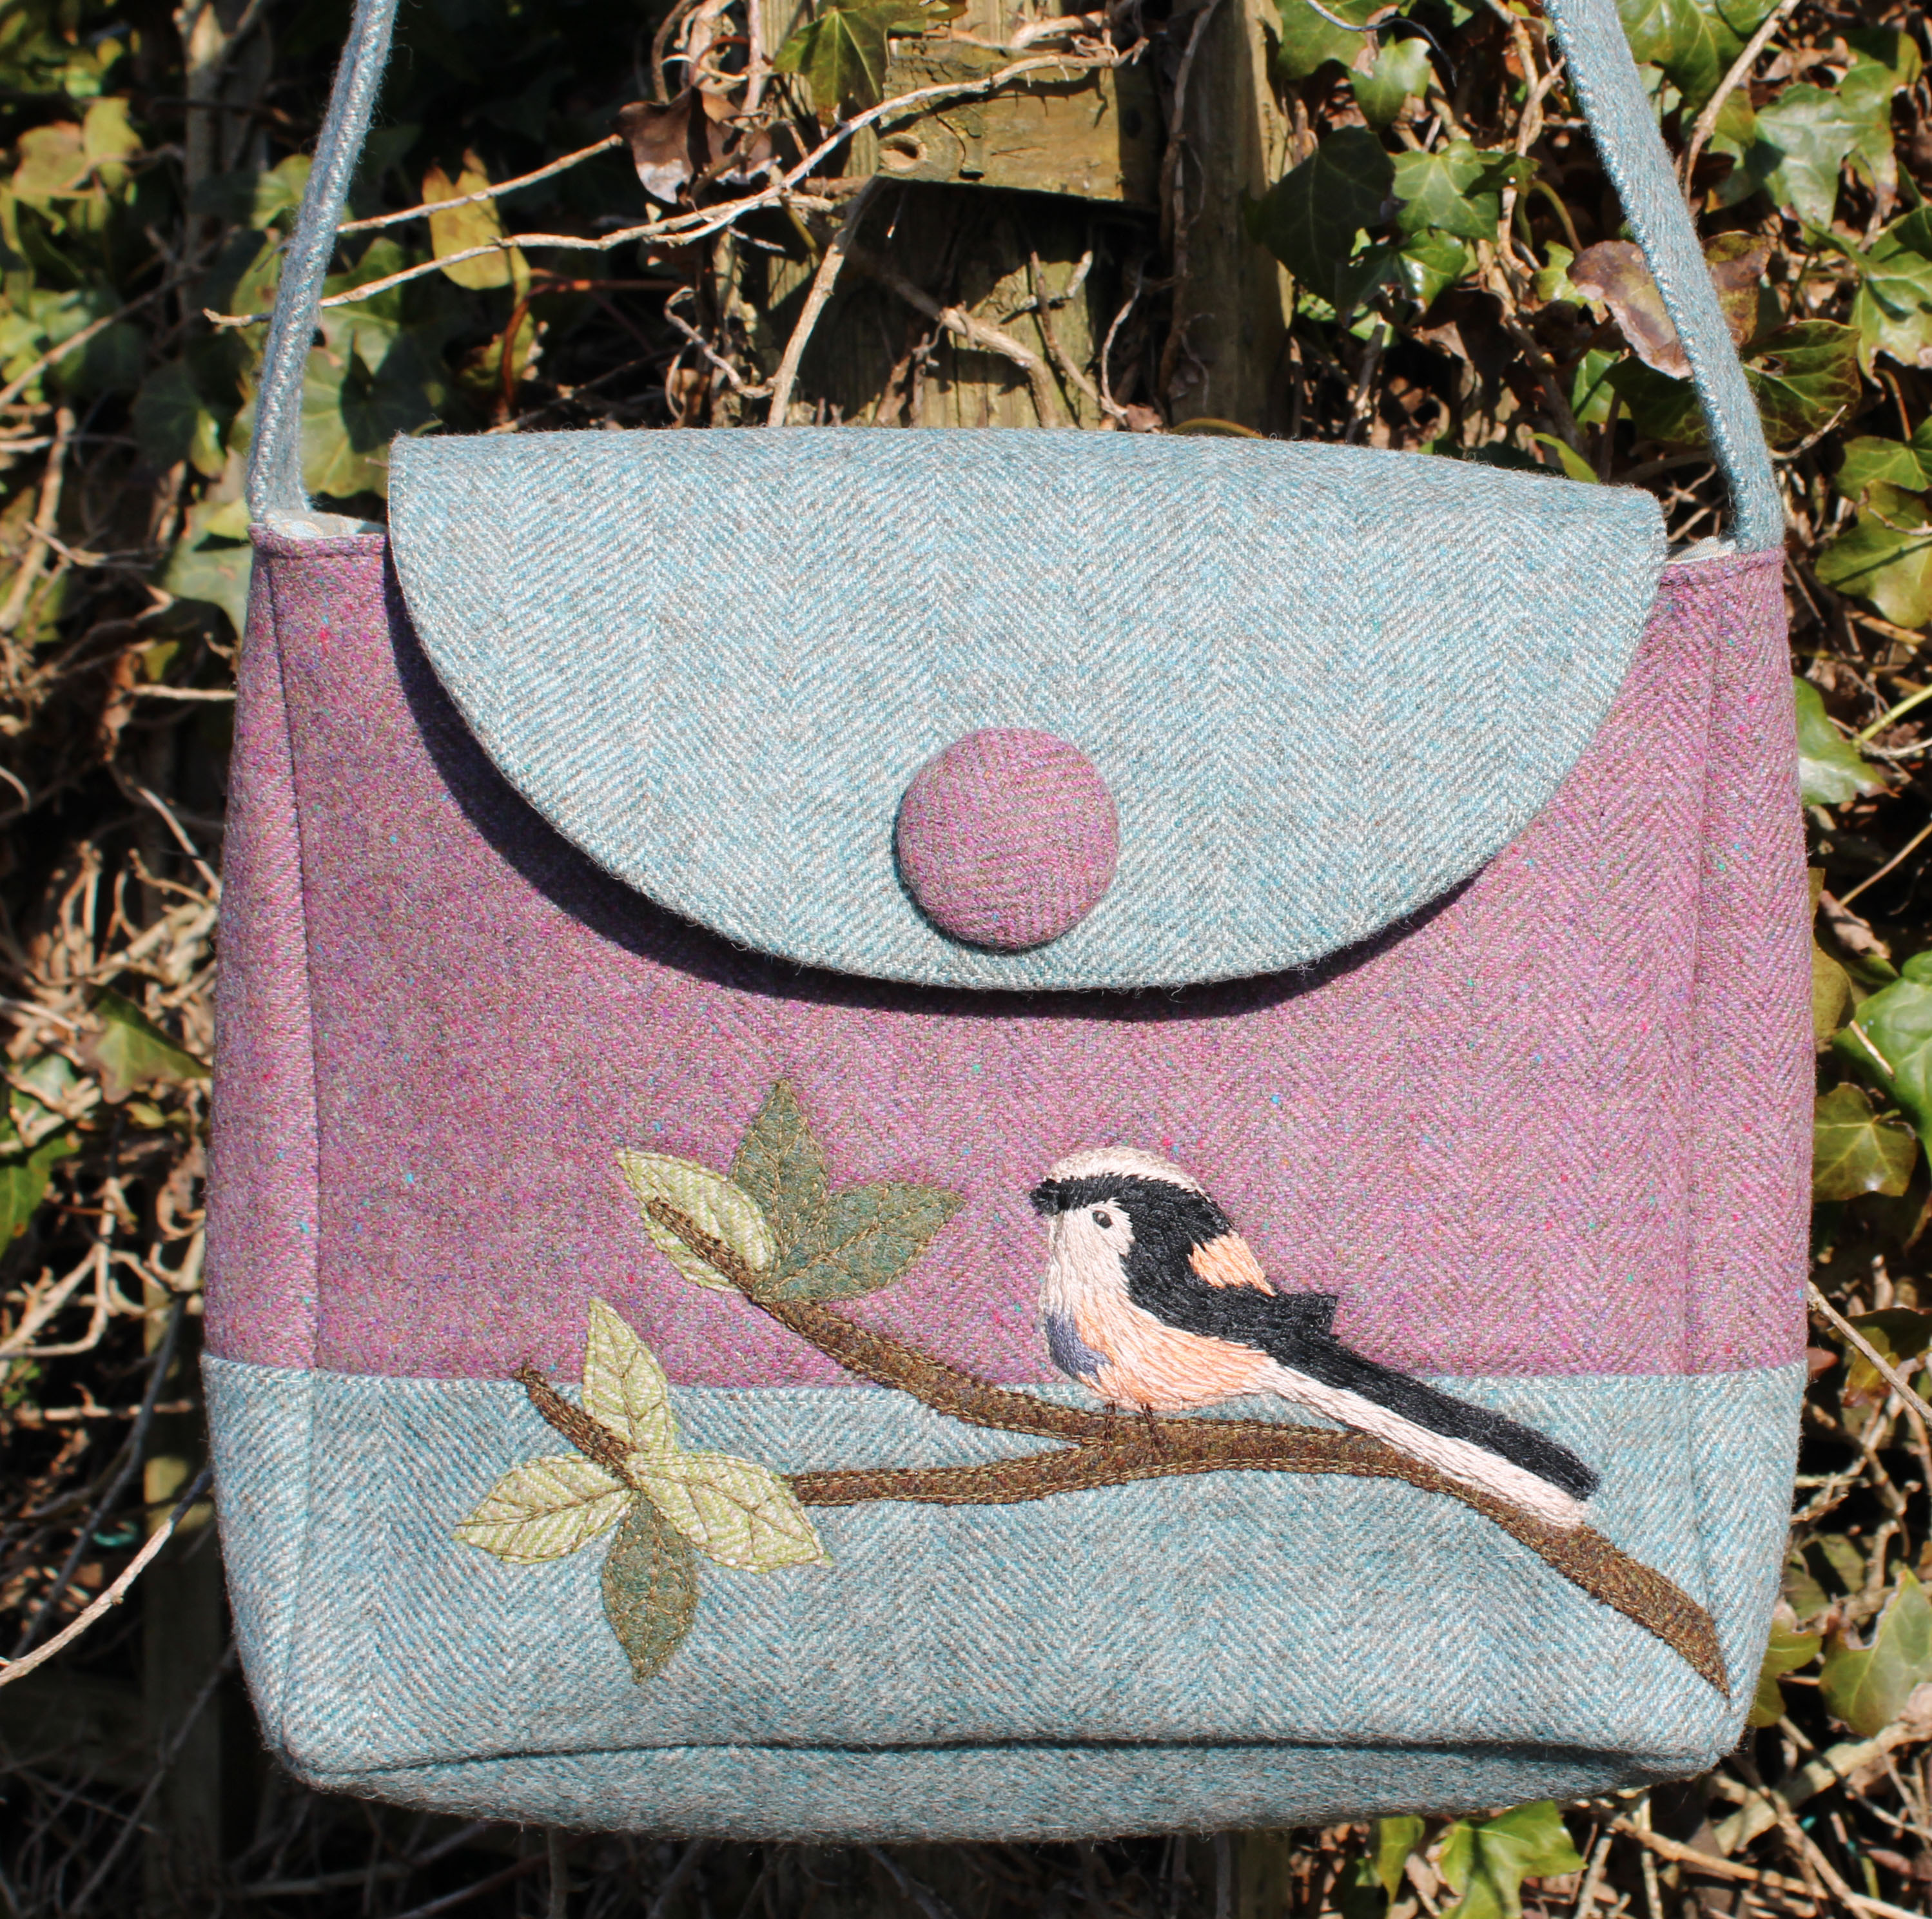 Sylvia's Bag Sewing Pattern